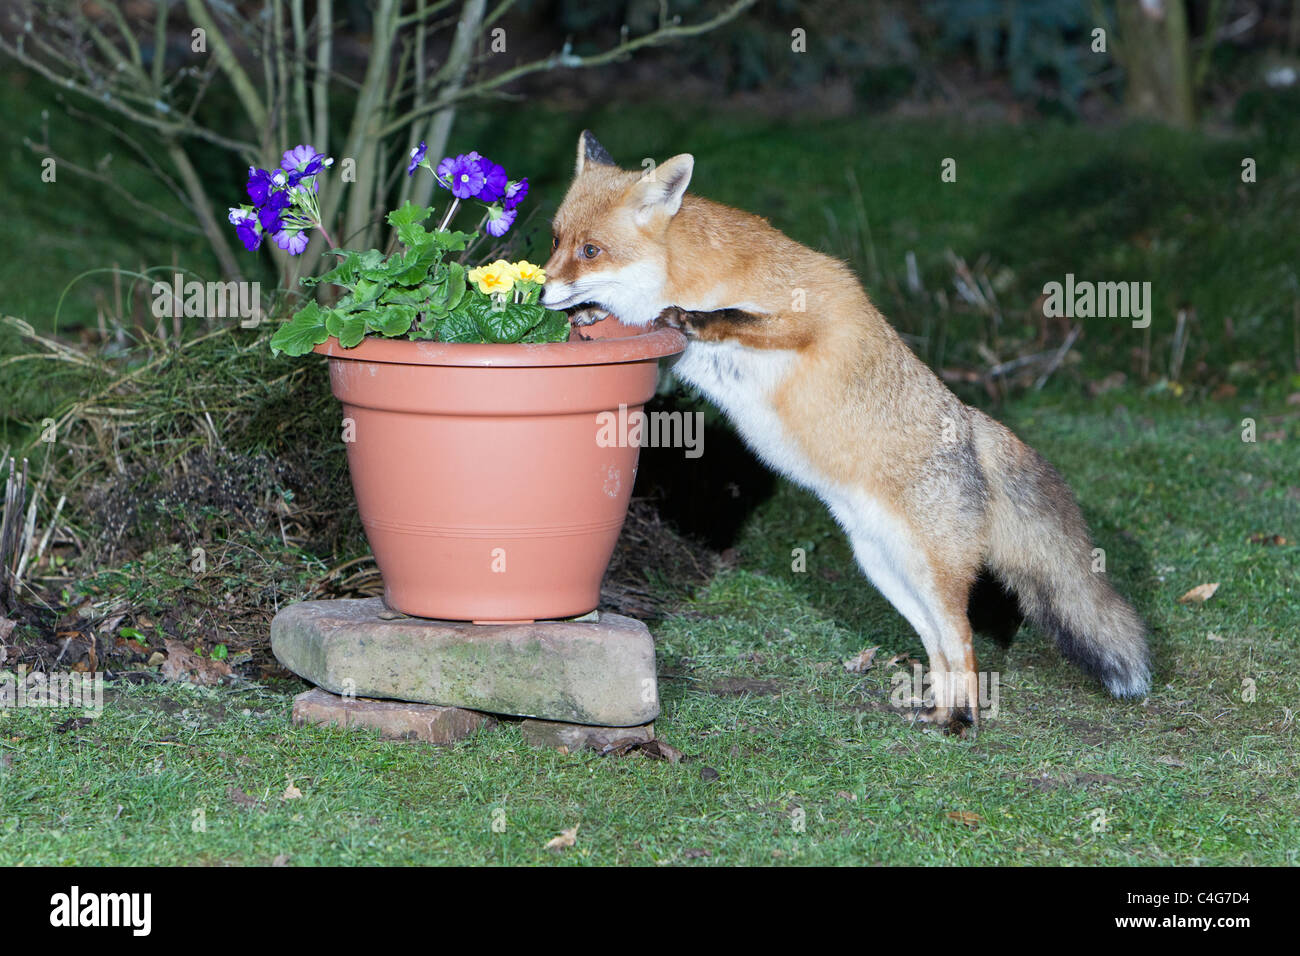 Unión el zorro (Vulpes vulpes), aspirando a flores en maceta Foto de stock